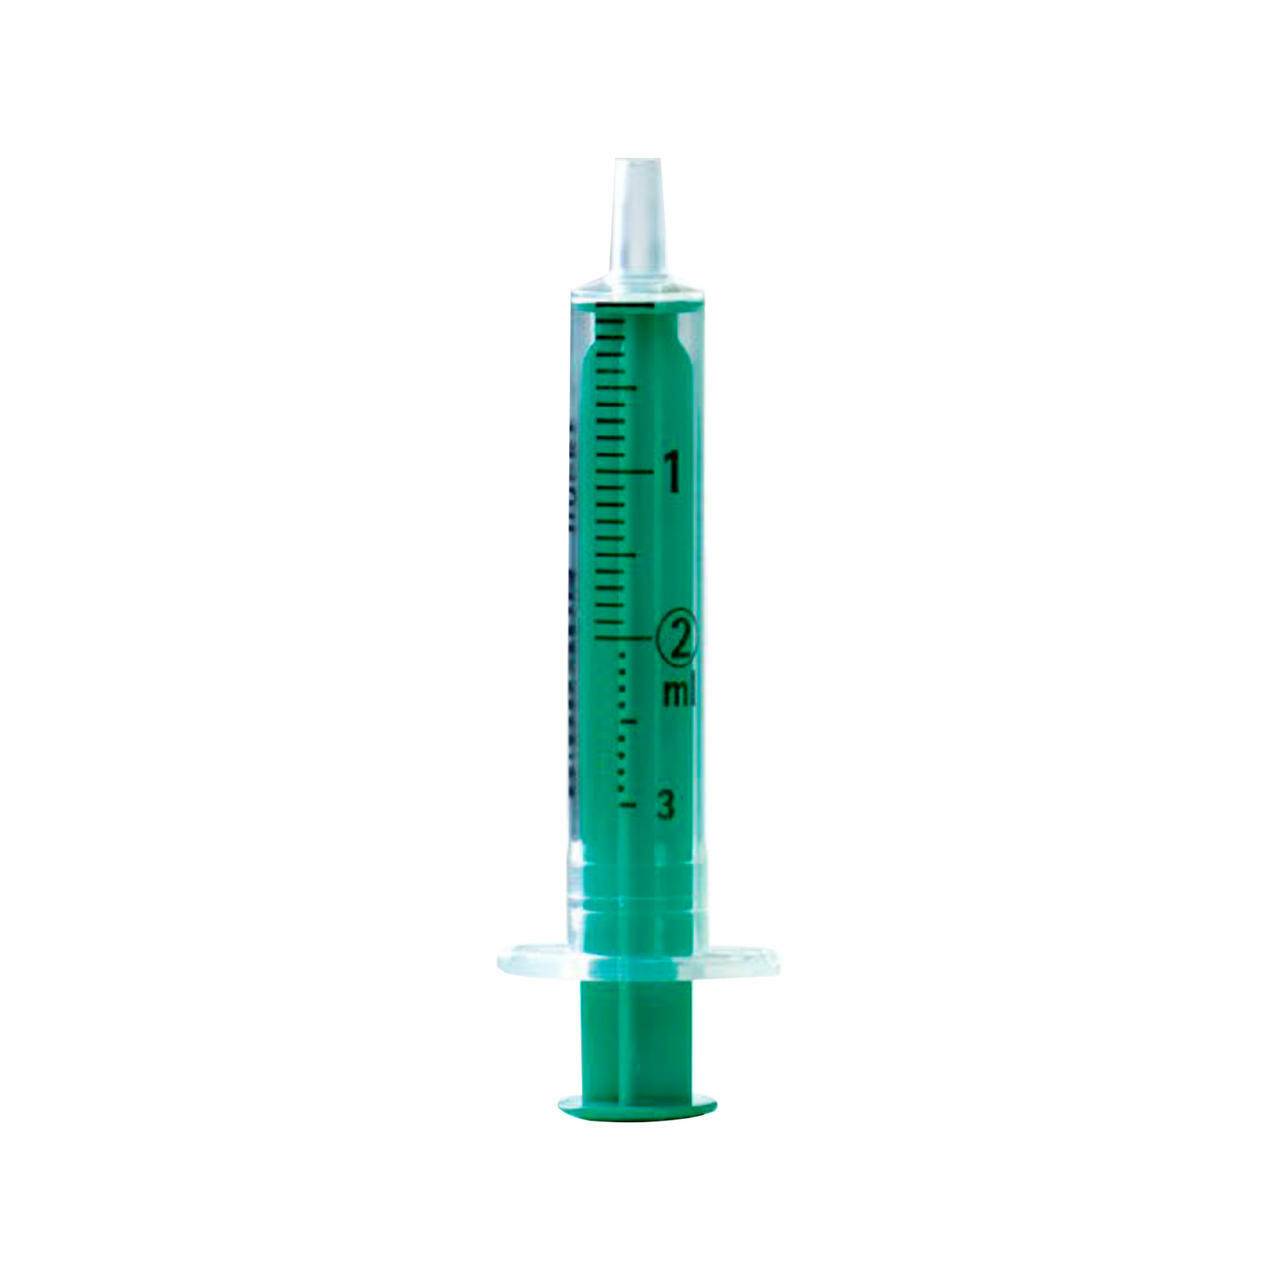 2ml BBraun Silicon Oil Free Injekt Syringe - UKMEDI